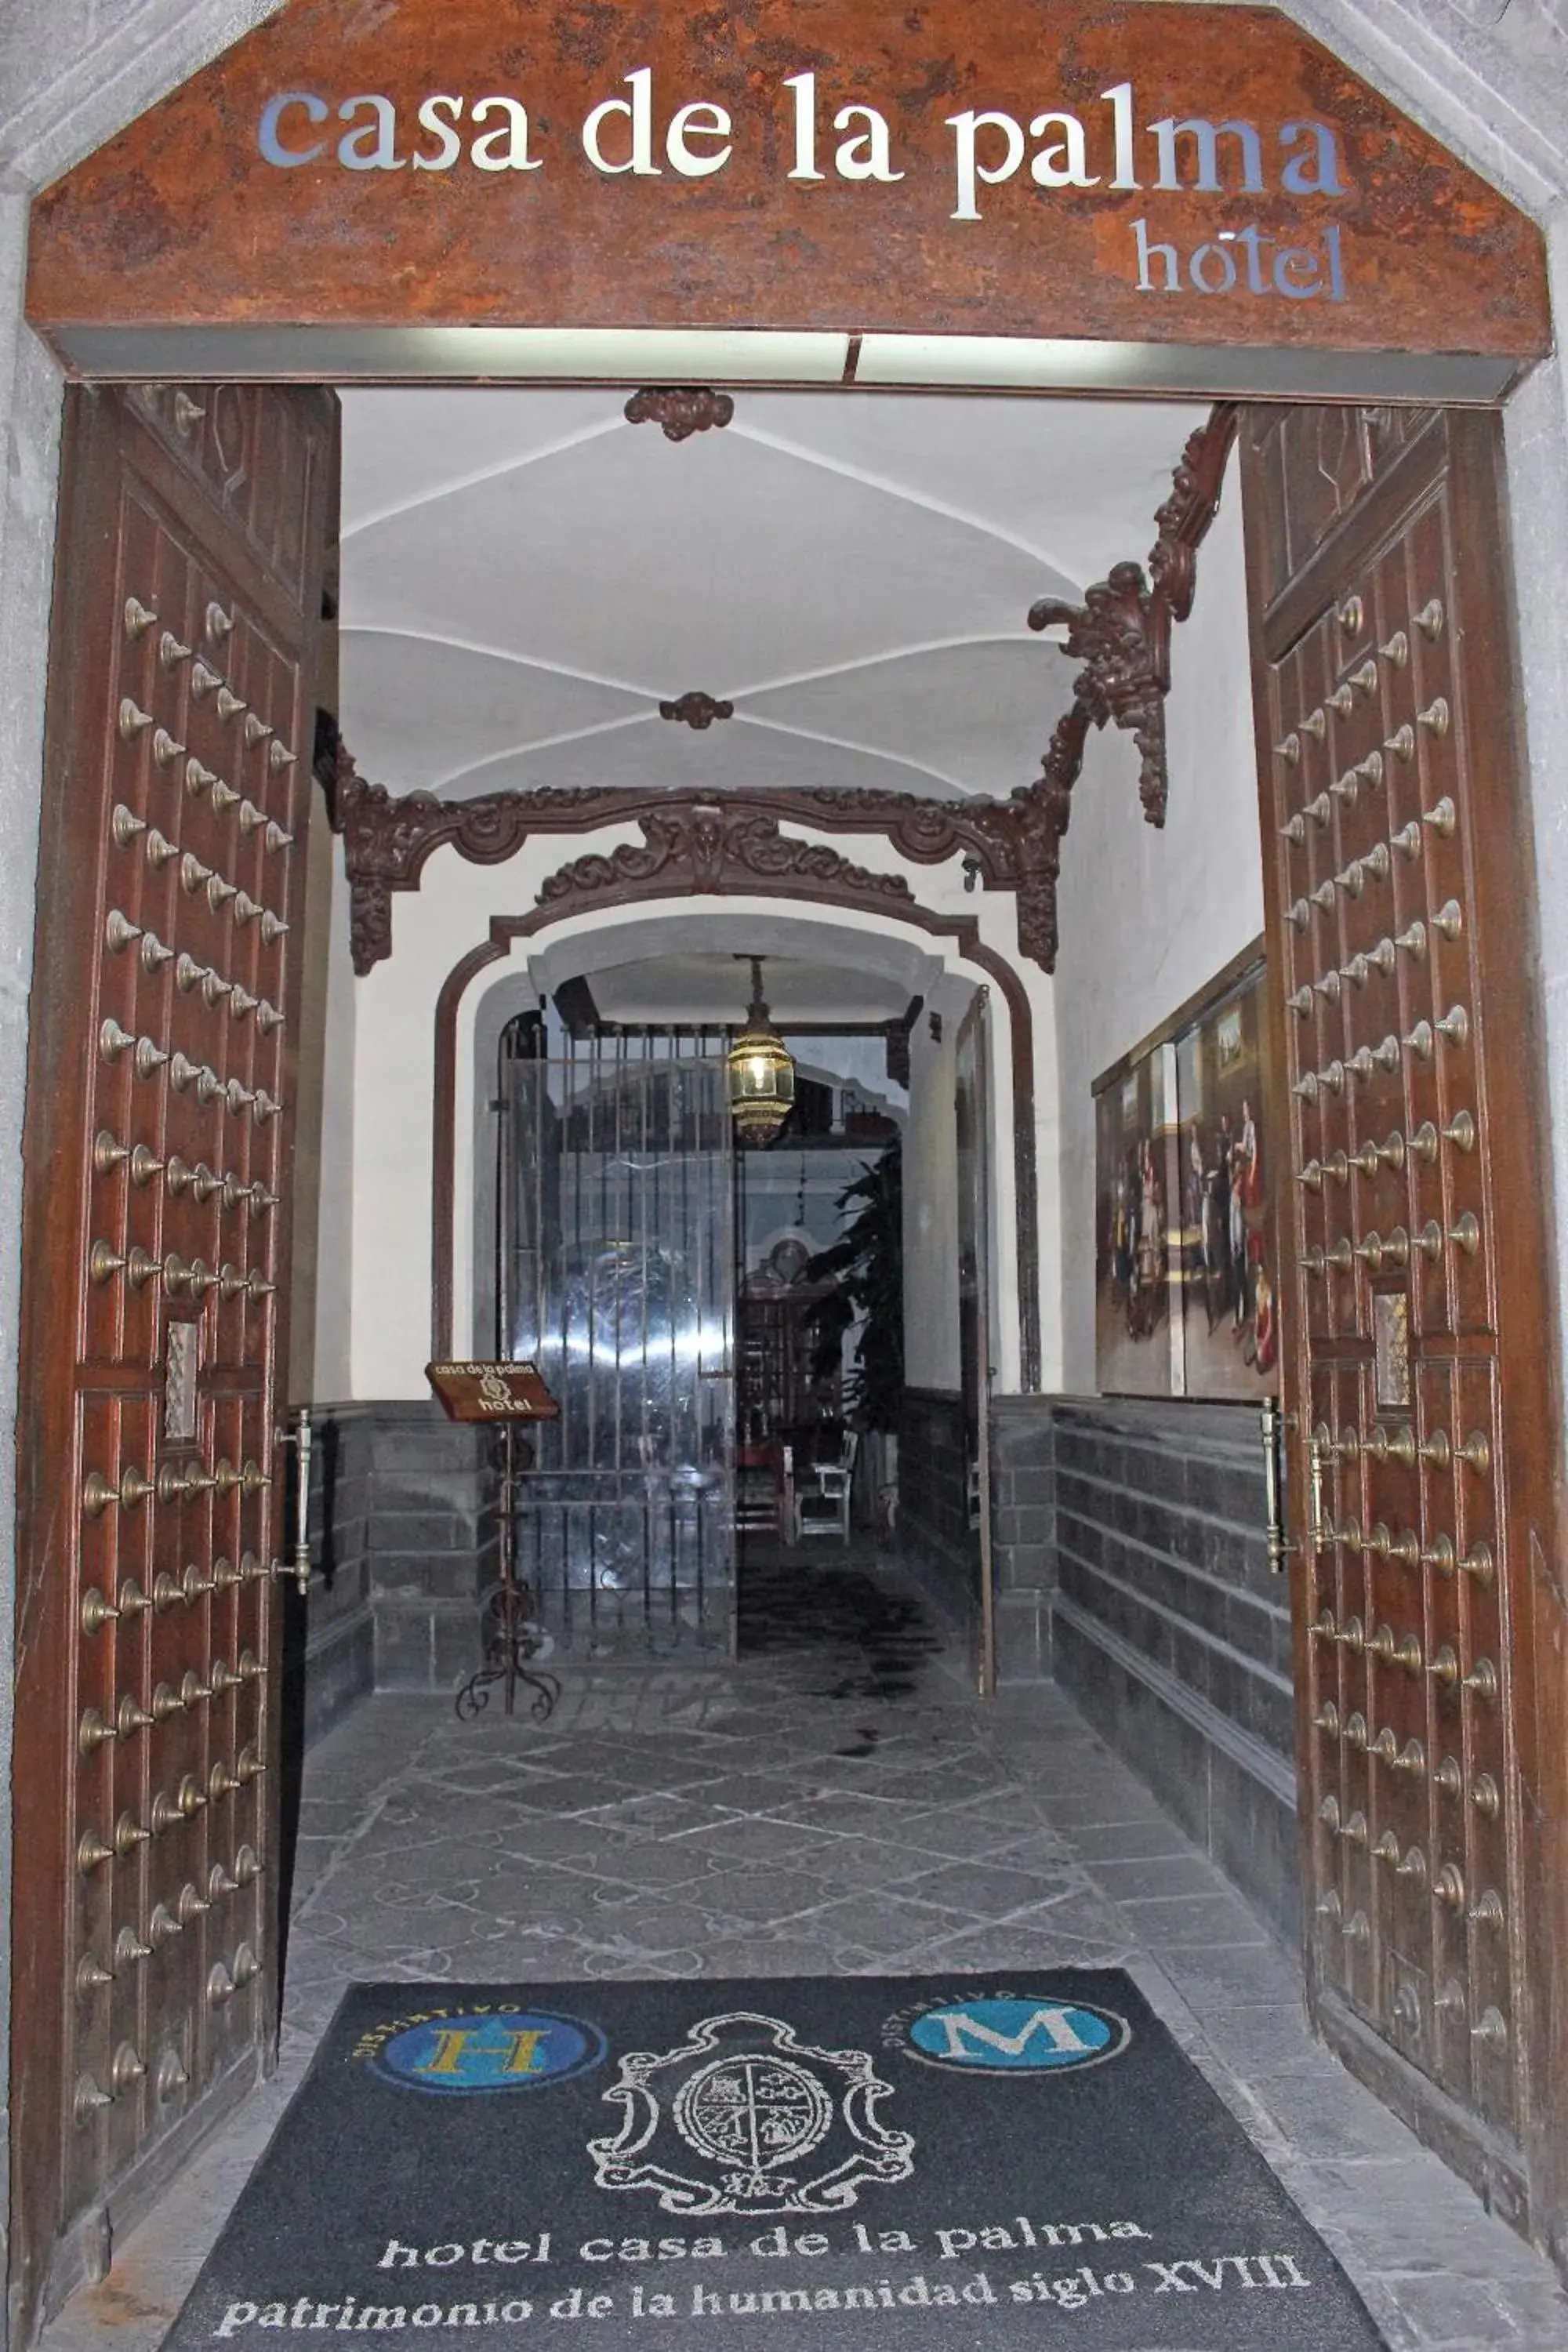 Facade/entrance in Hotel Boutique Casa de la Palma